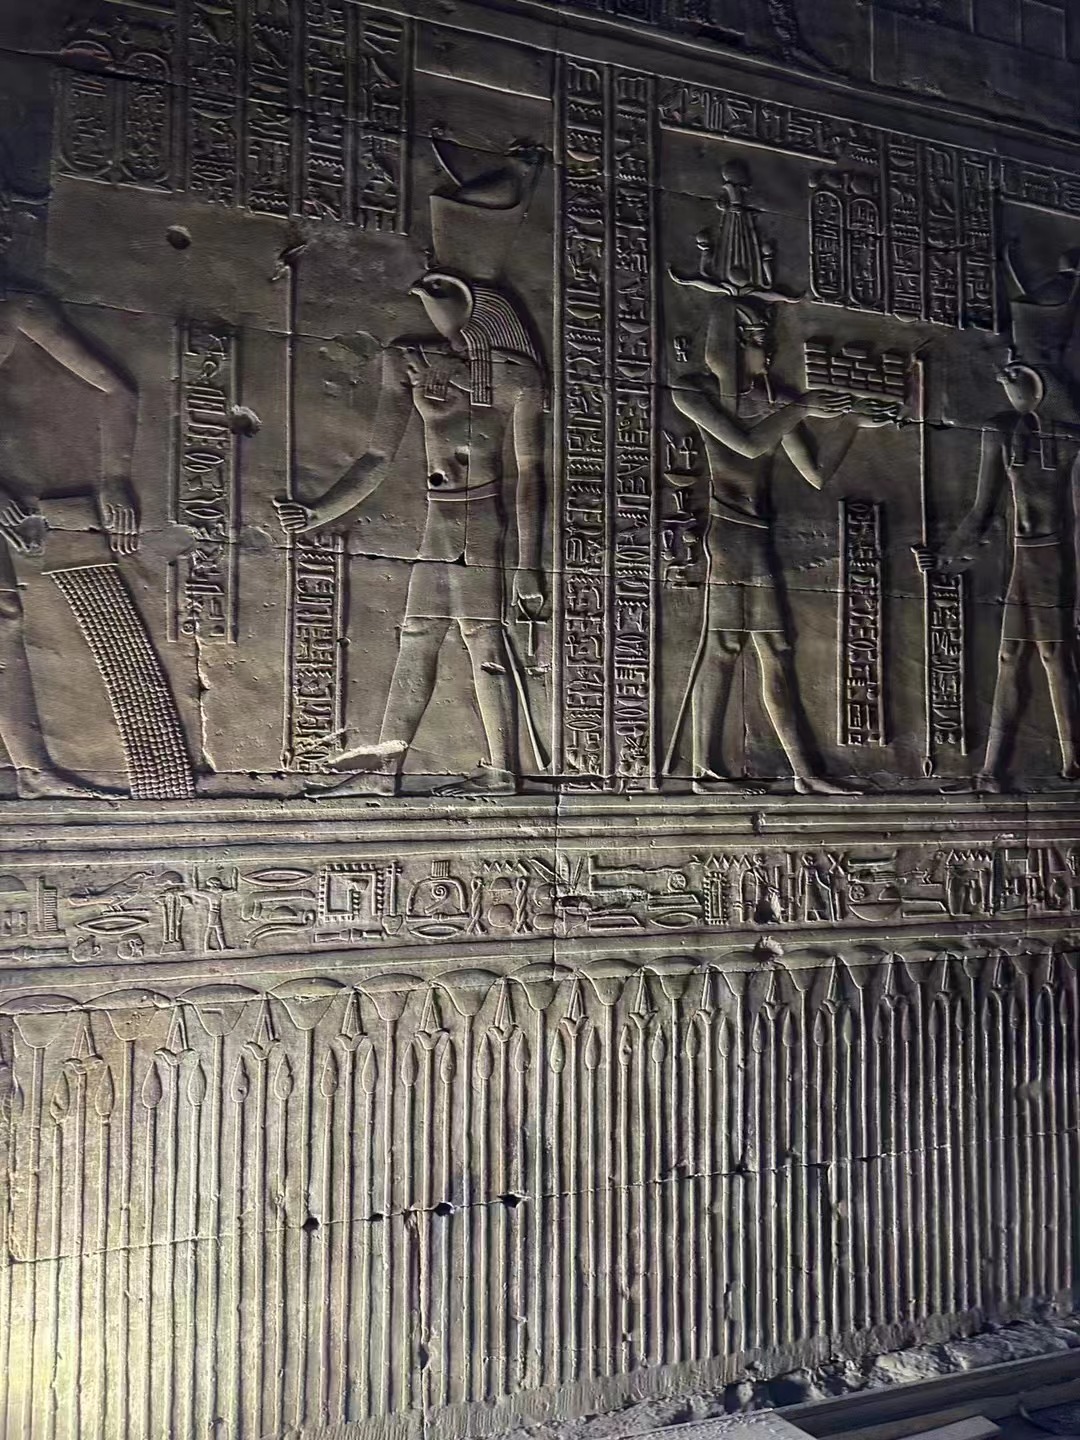 【エドフ神殿 Temple of Edfu】古代エジプト-プトレマイオス朝時代